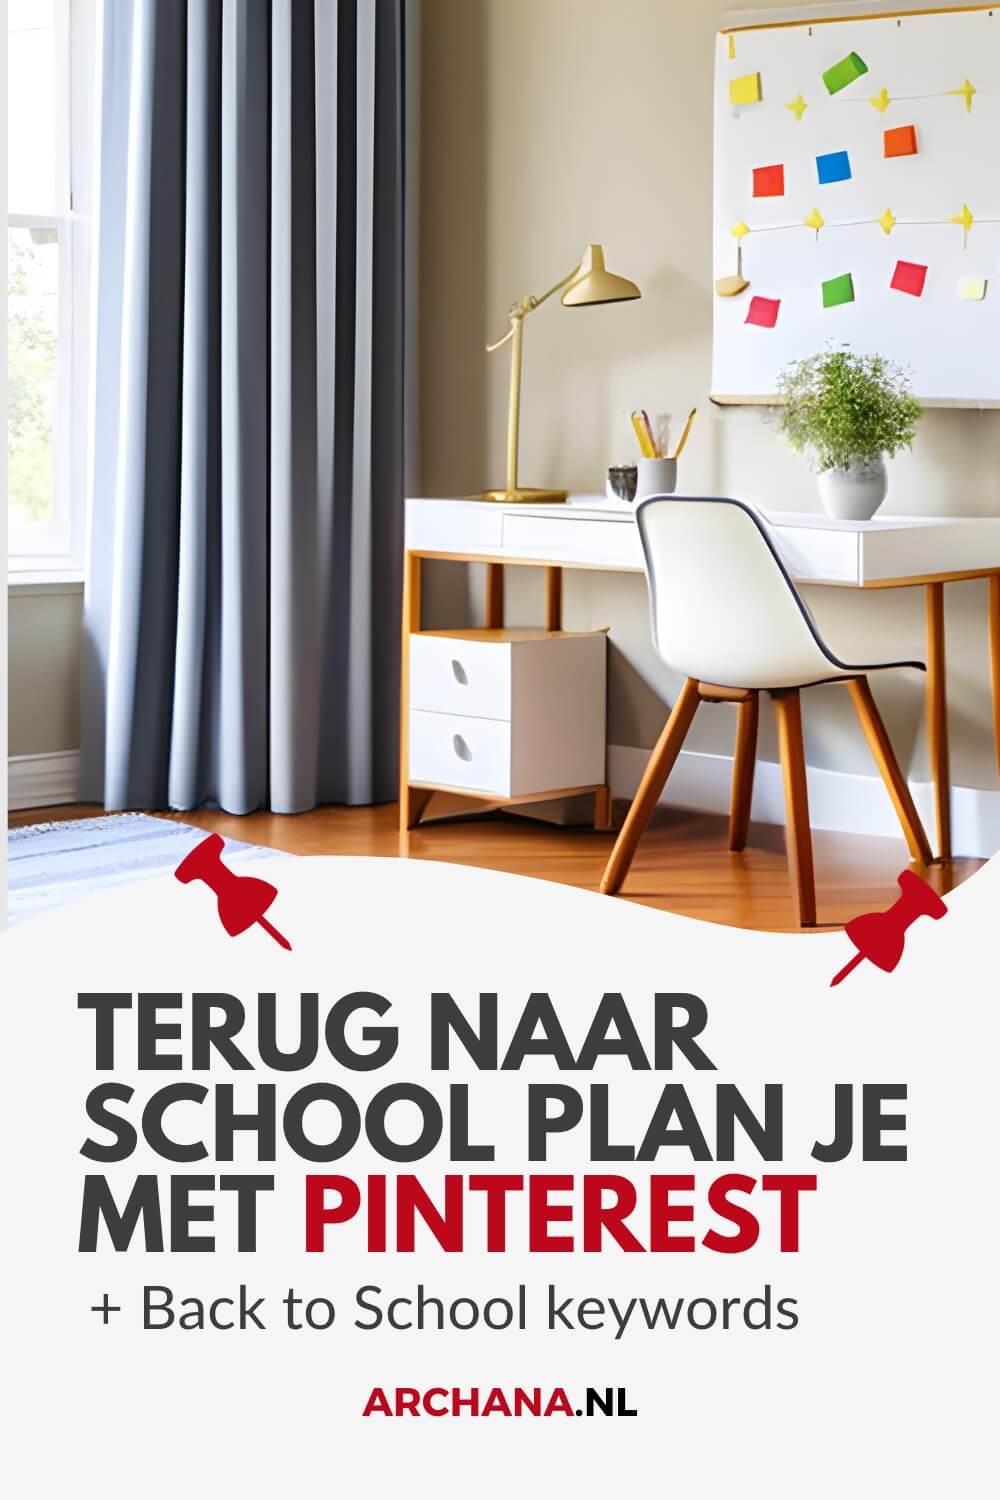 Terug naar school plan je met Pinterest + Populaire Back to School keywords - ARCHANA.NL